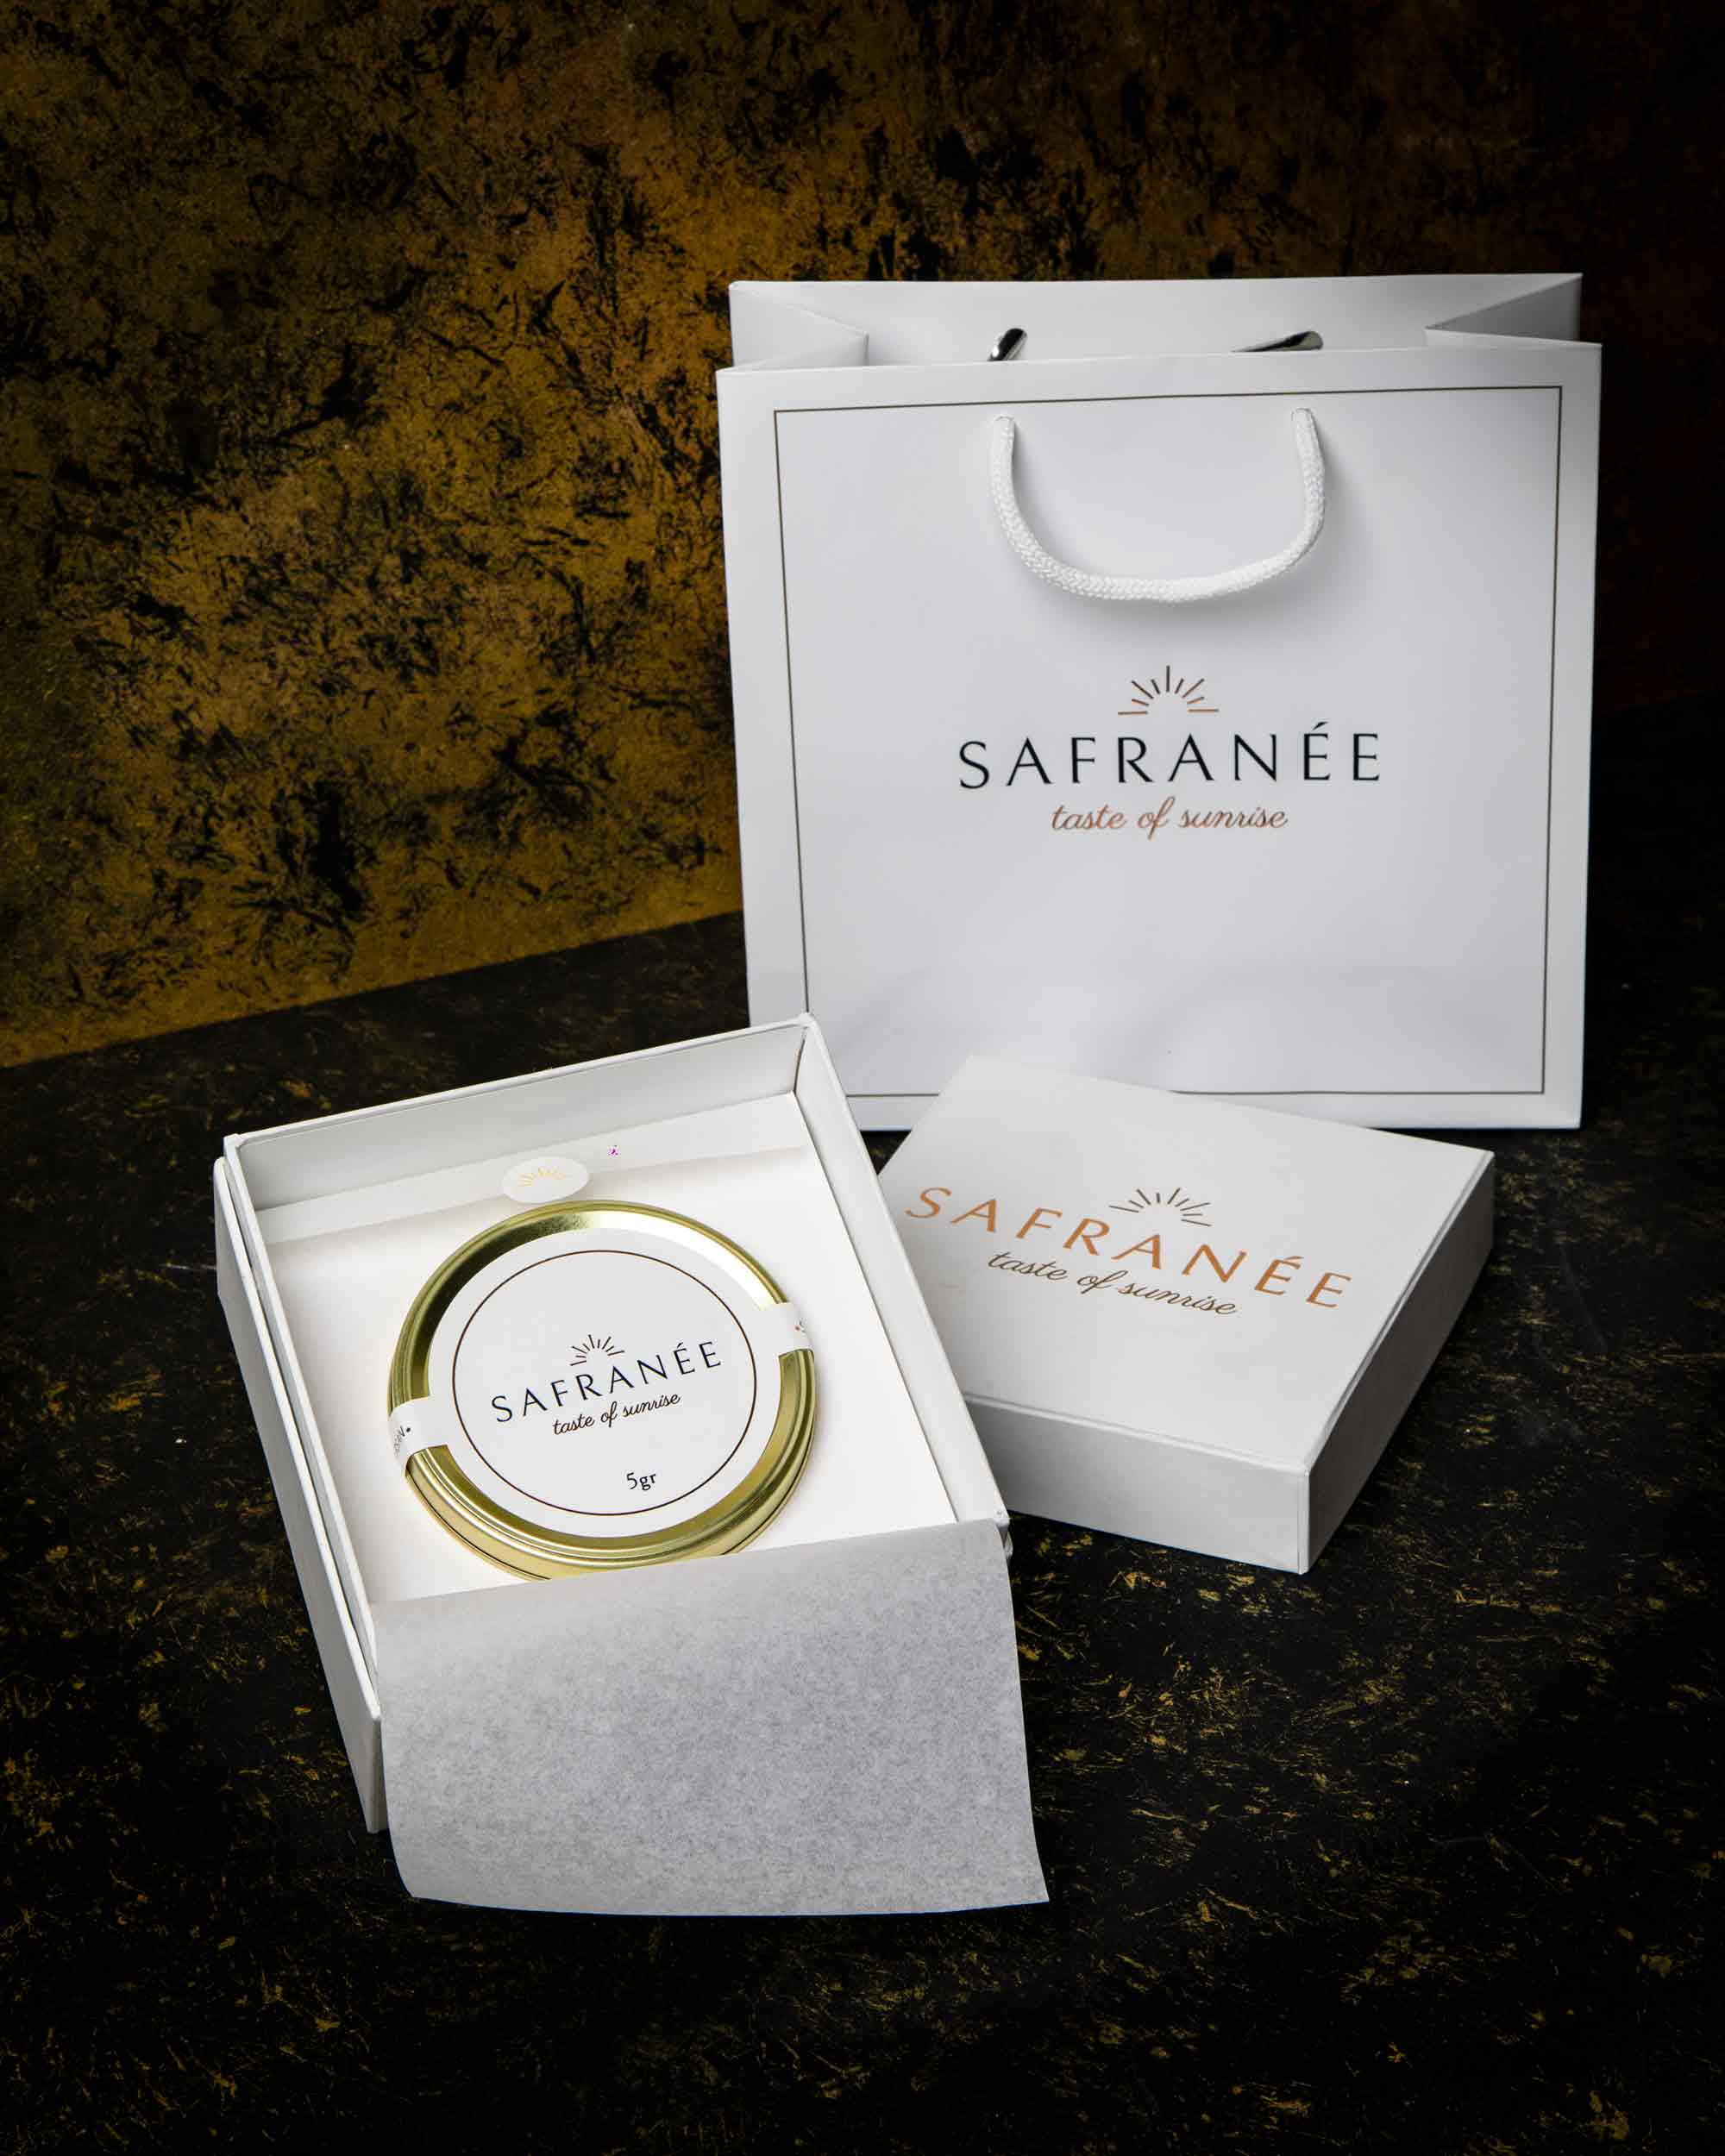 Boîte cadeau élégante contenant 5g du meilleur safran persan de Safranée